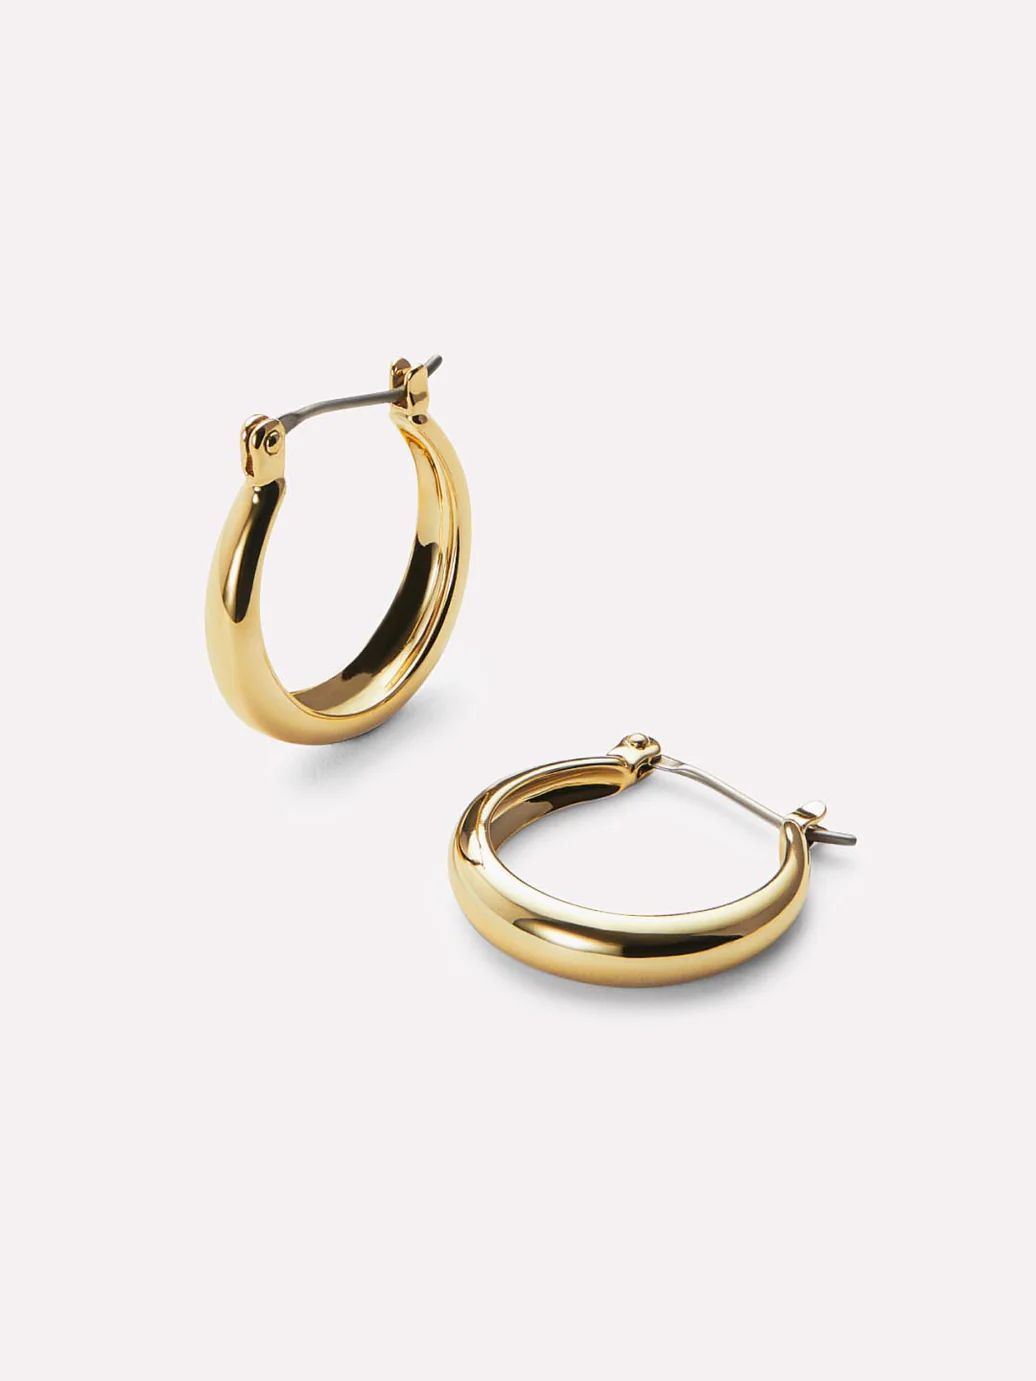 Endless Gold Hoop Earrings - Venus | Ana Luisa